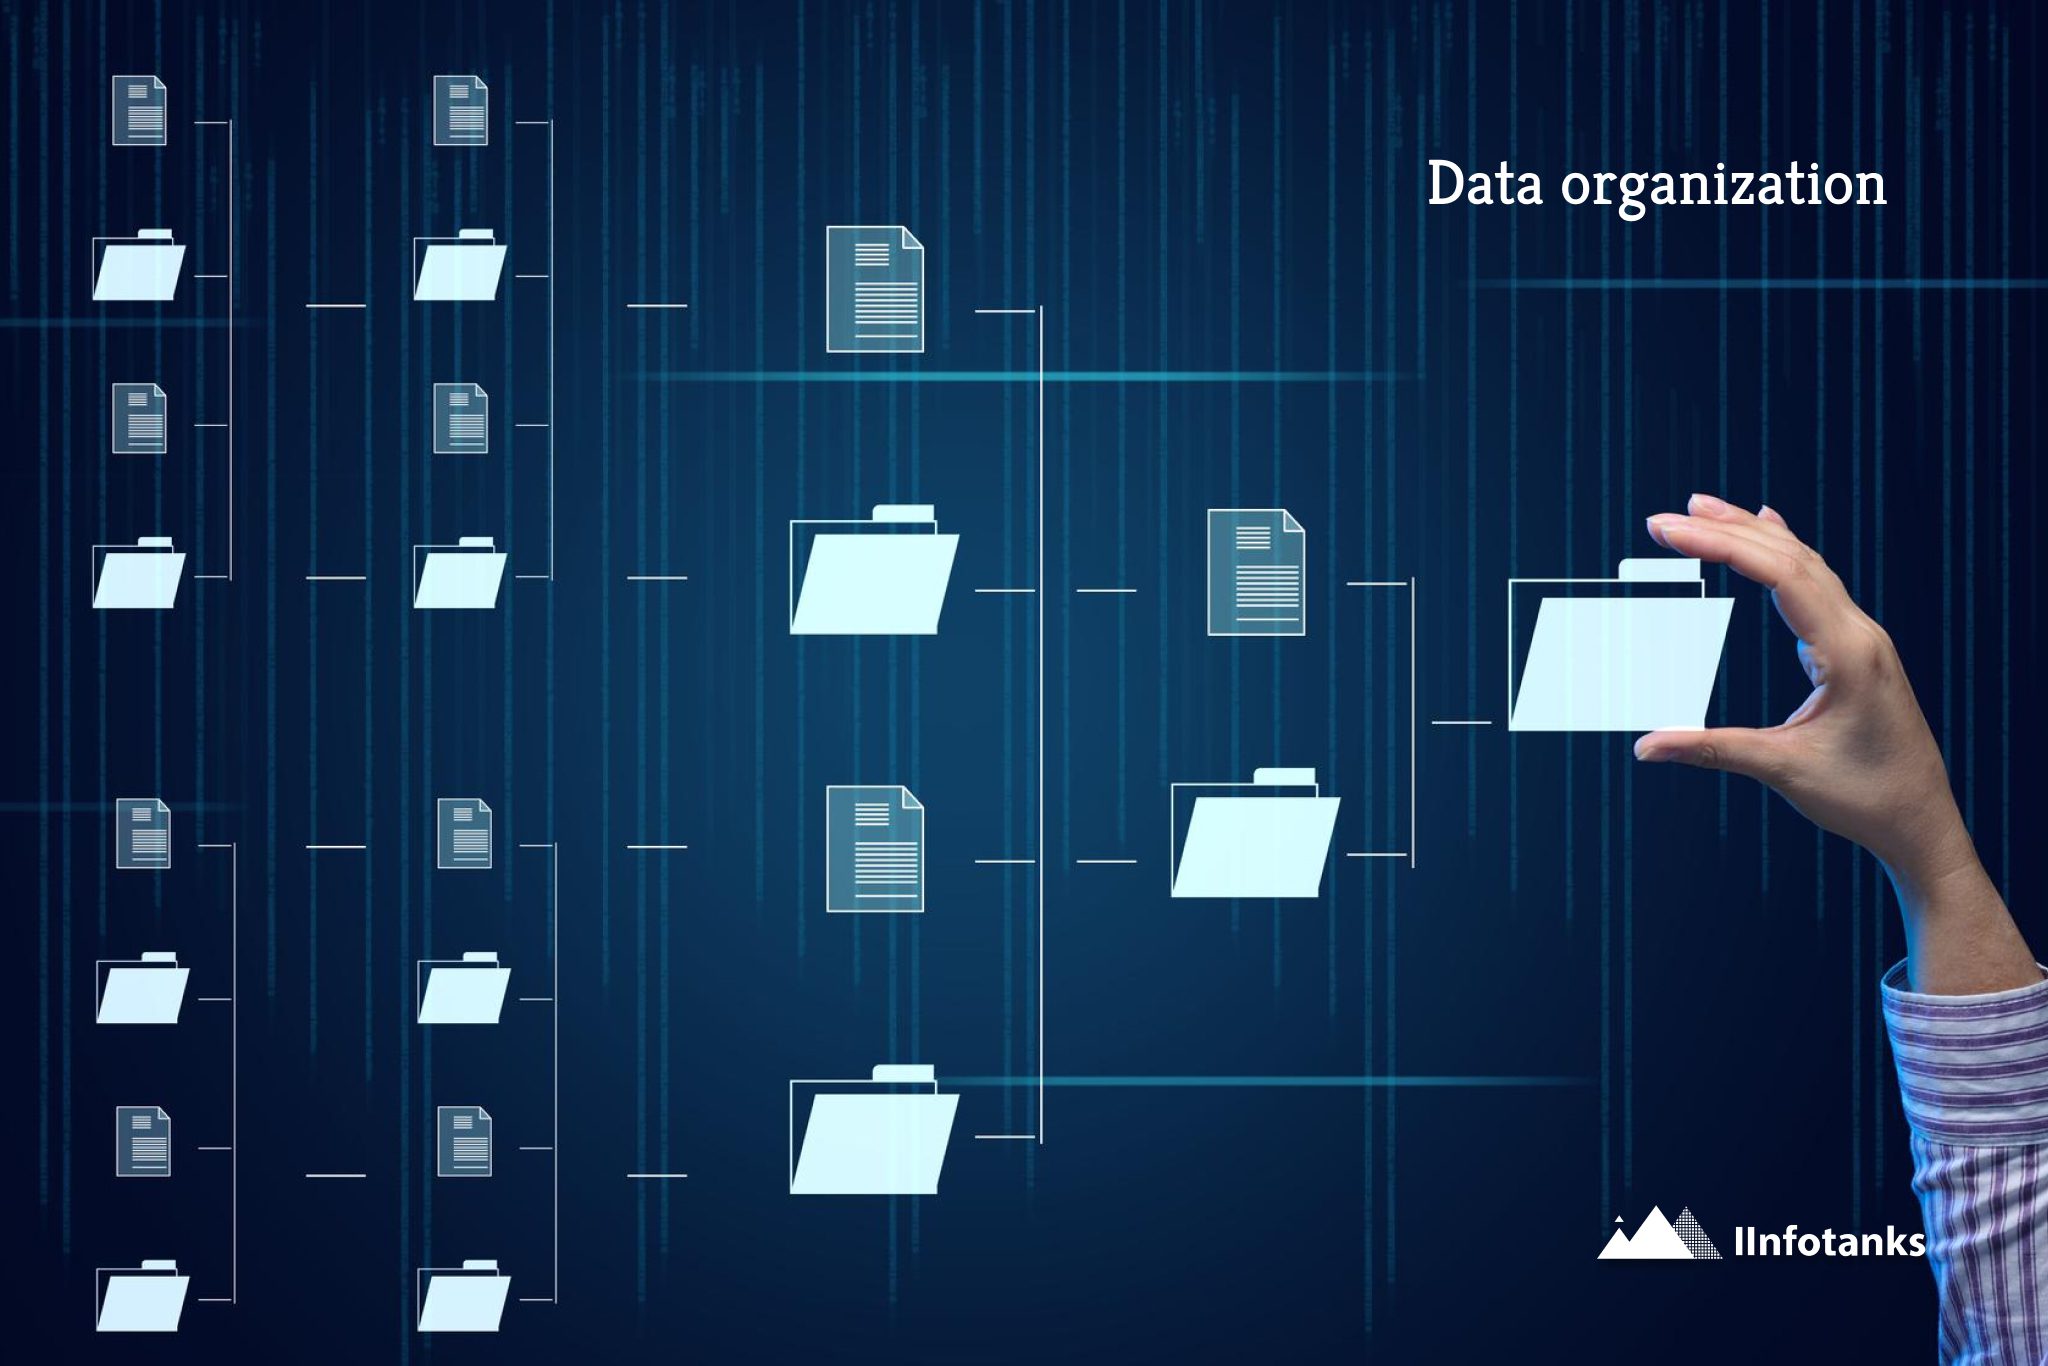 Data organization